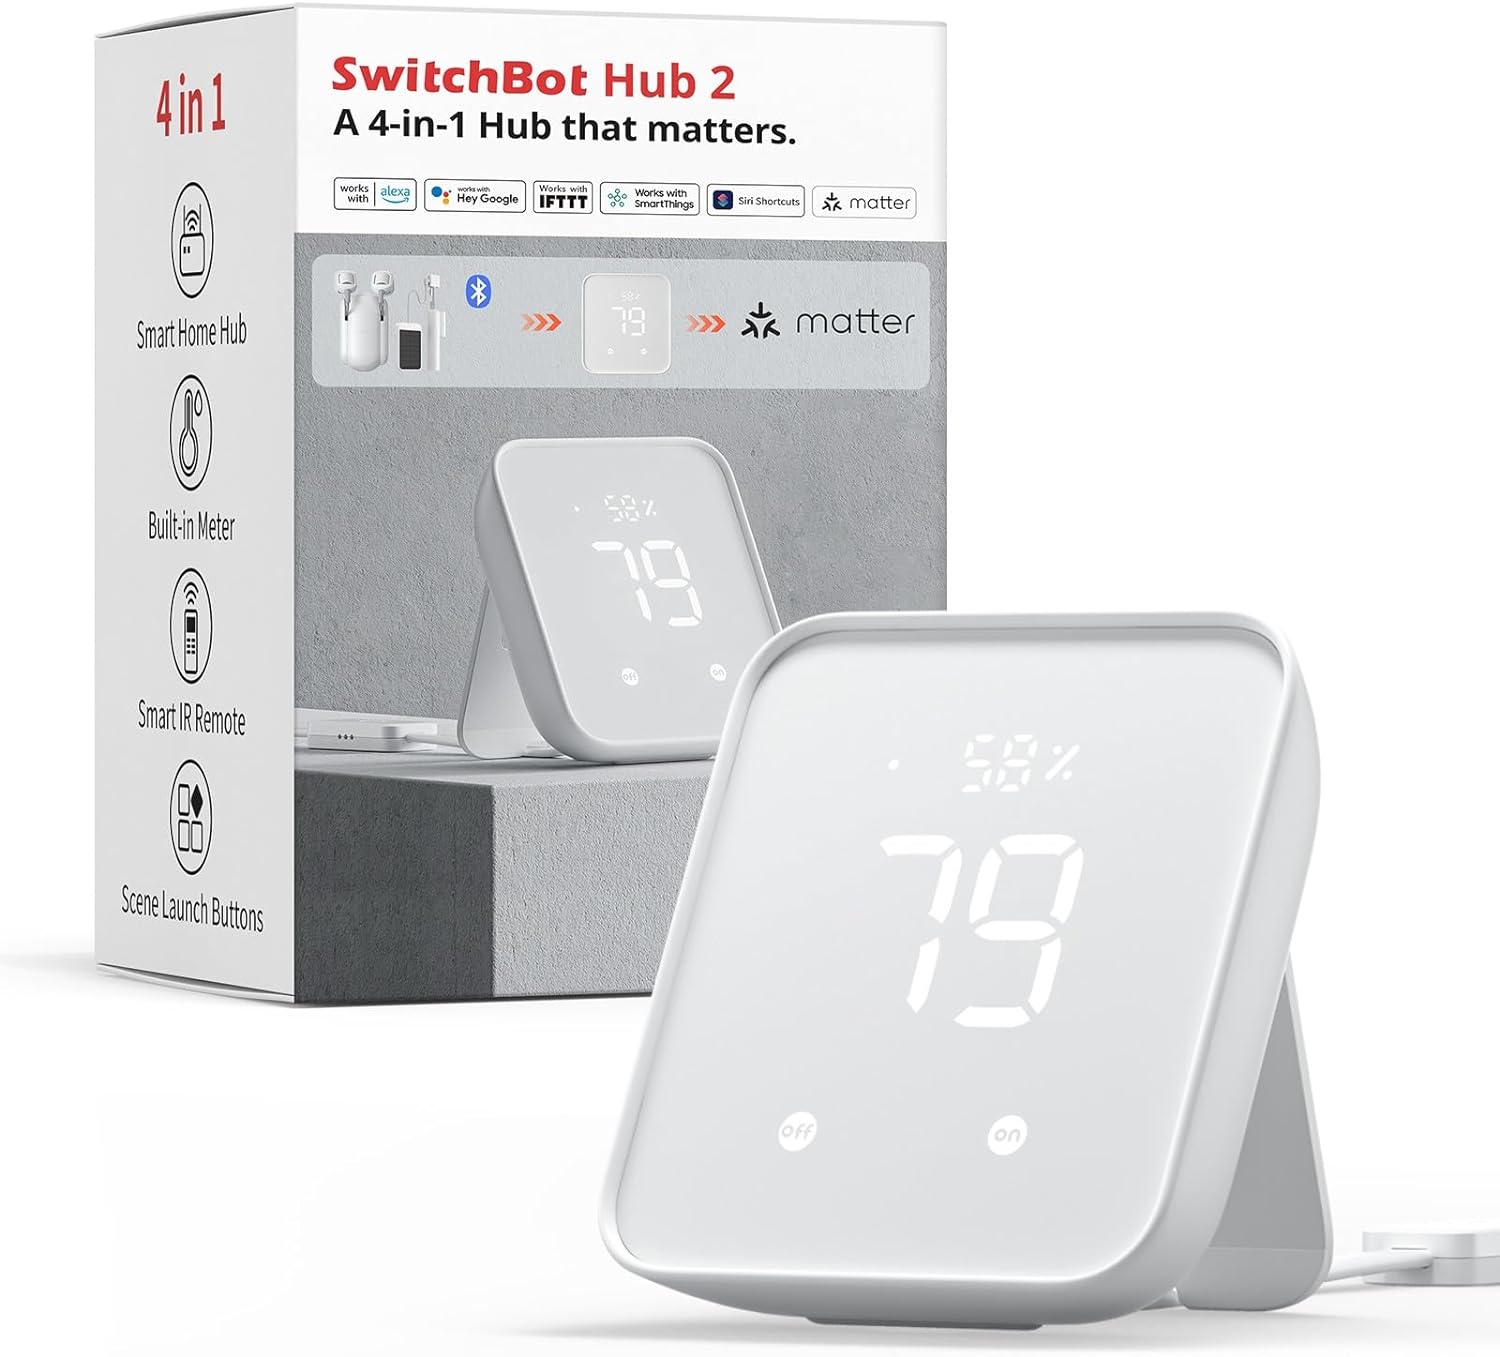 Switchbot hub 2 product